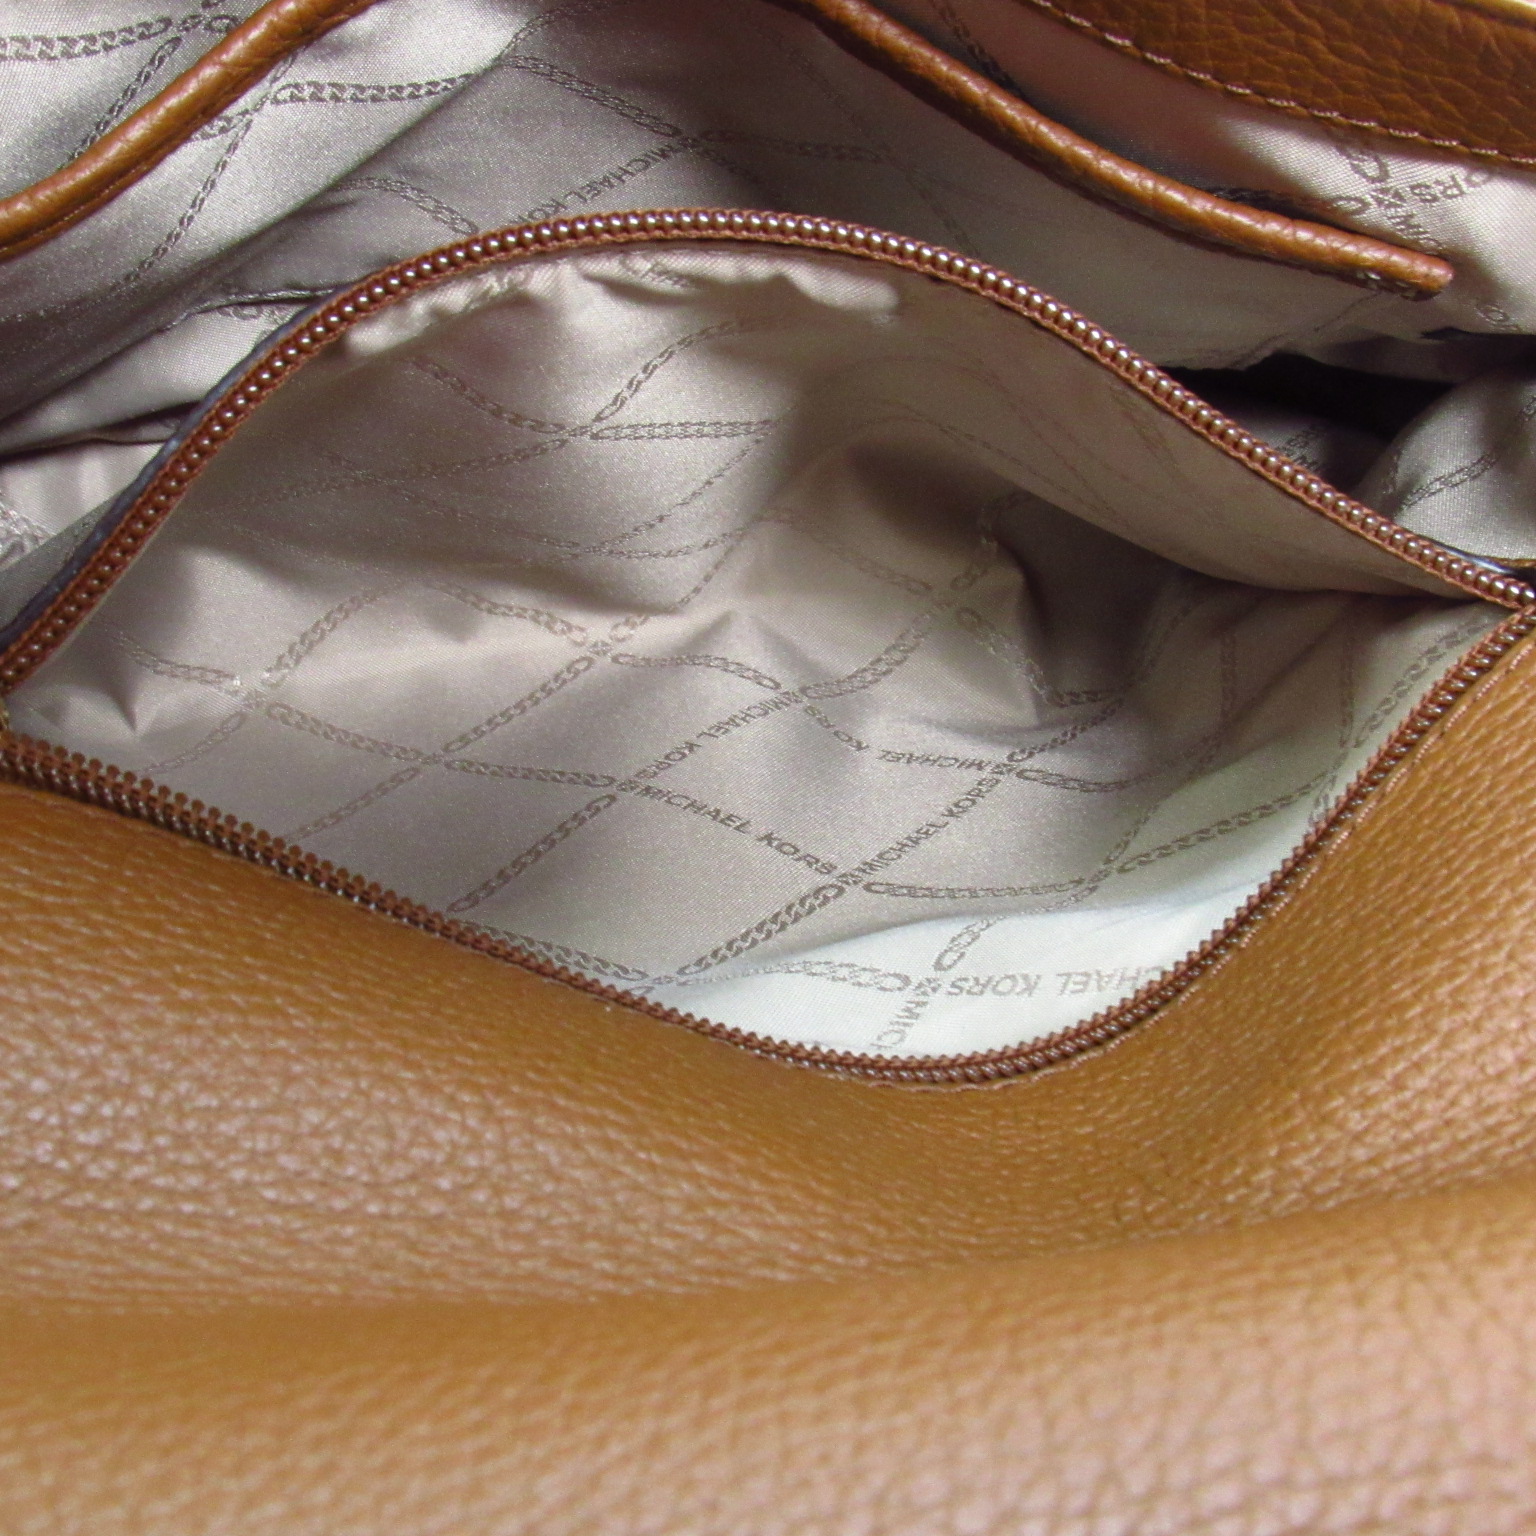 Michael Kors 30F9G06L2L Bedford Legacy Leather Pebbled Shoulder Bag - Brown